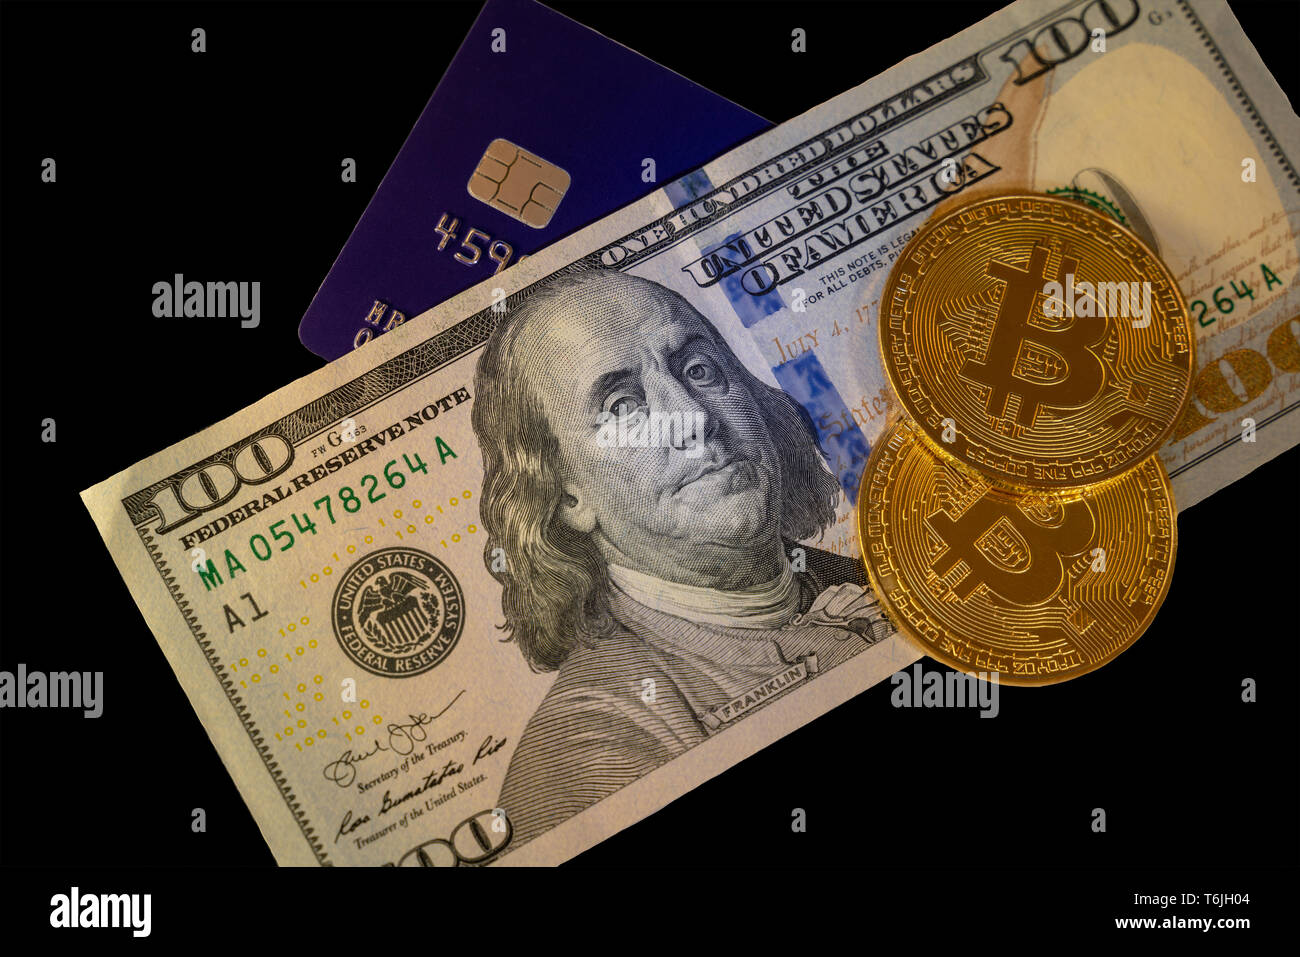 Isolierte bitcoin mit einem blauen Kreditkarte auf hundert Dollar banknote Hintergrund, cryptocurrency Annahme für die Zahlung und Finanzierung Konzept Stockfoto